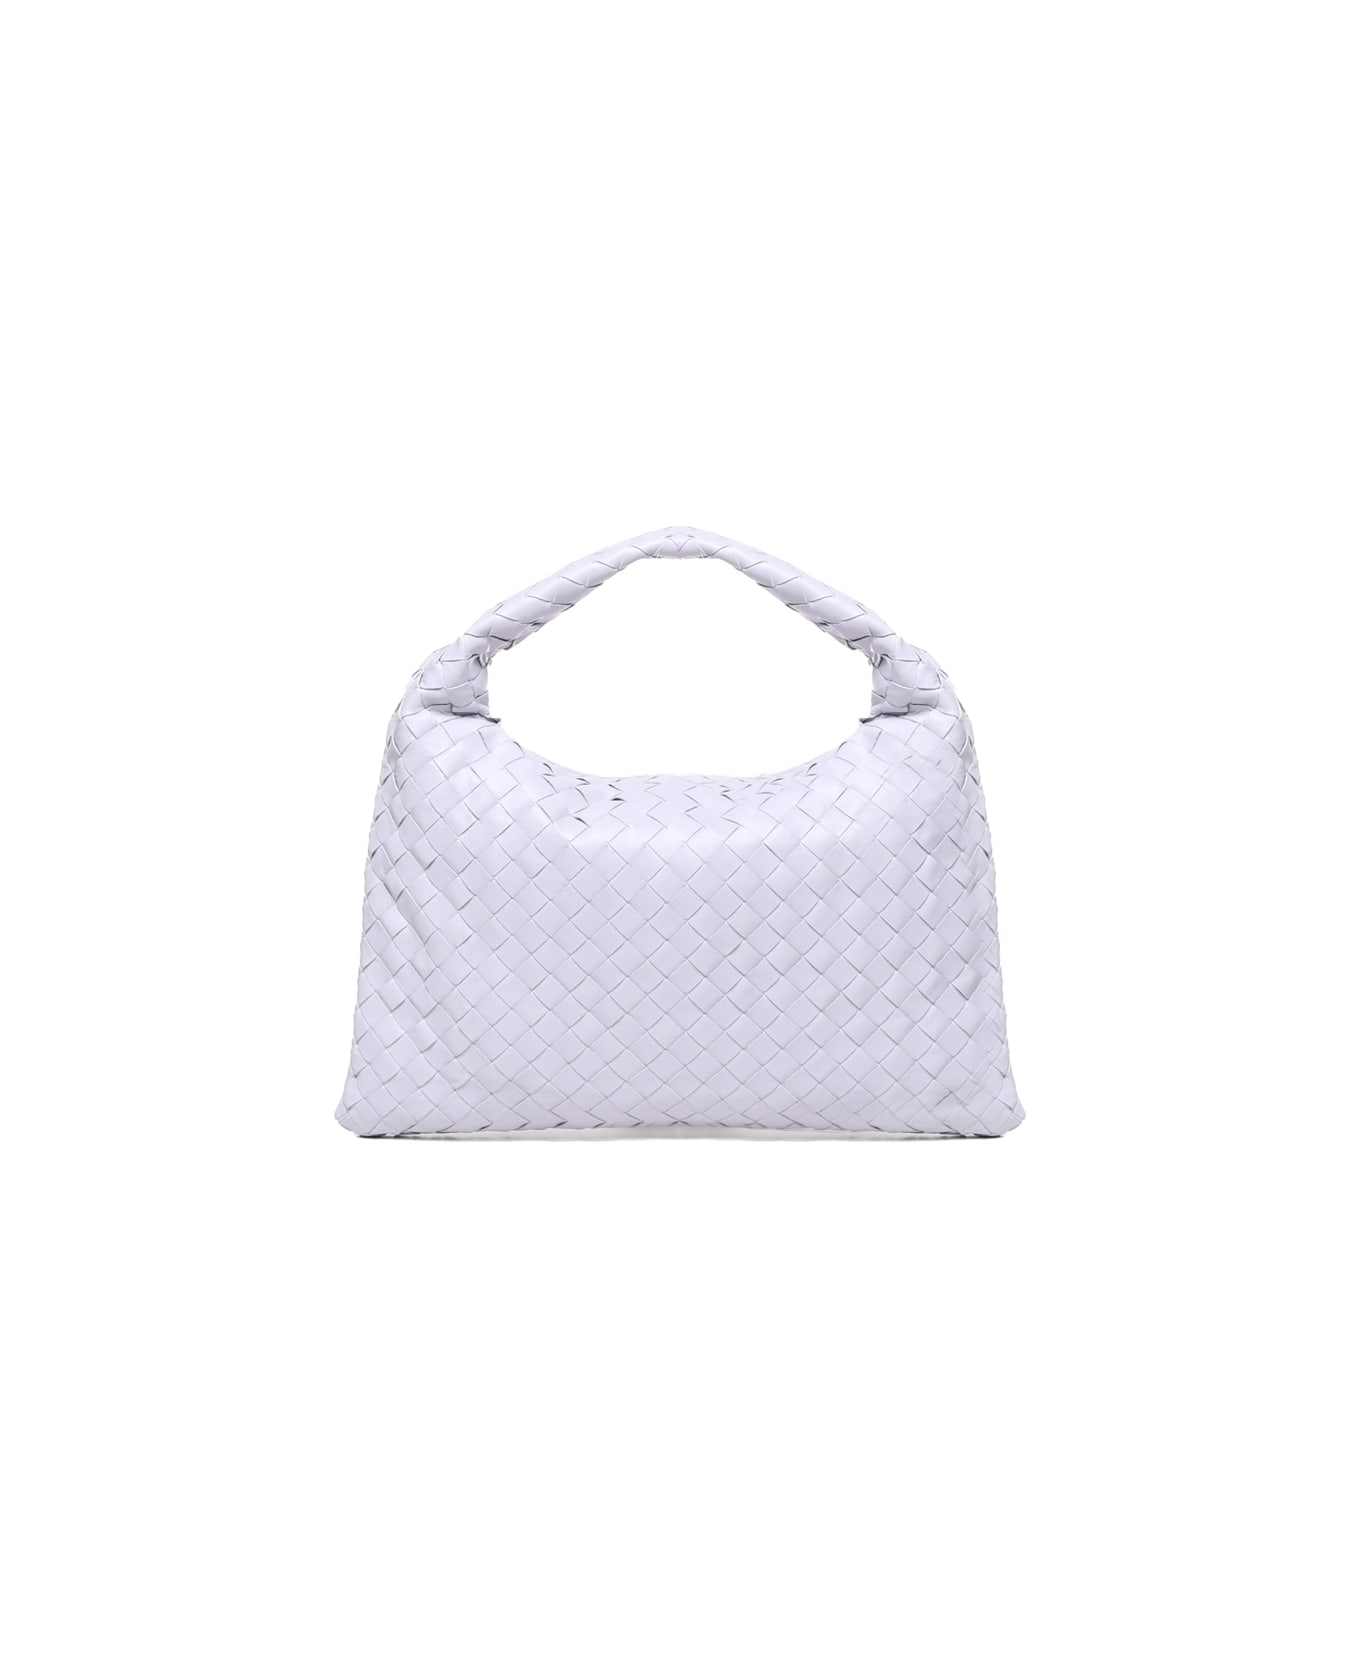 Bottega Veneta Small Hop Bag - White